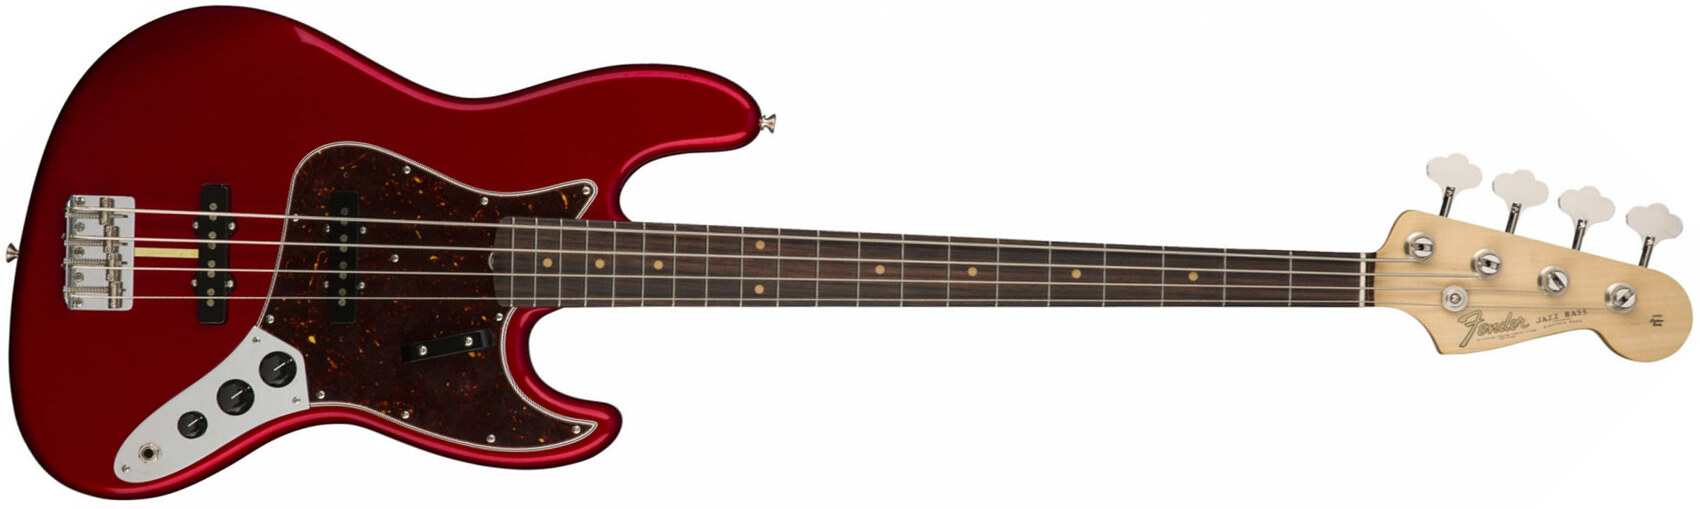 Fender Jazz Bass '60s American Original Usa Rw - Candy Apple Red - Bajo eléctrico de cuerpo sólido - Main picture